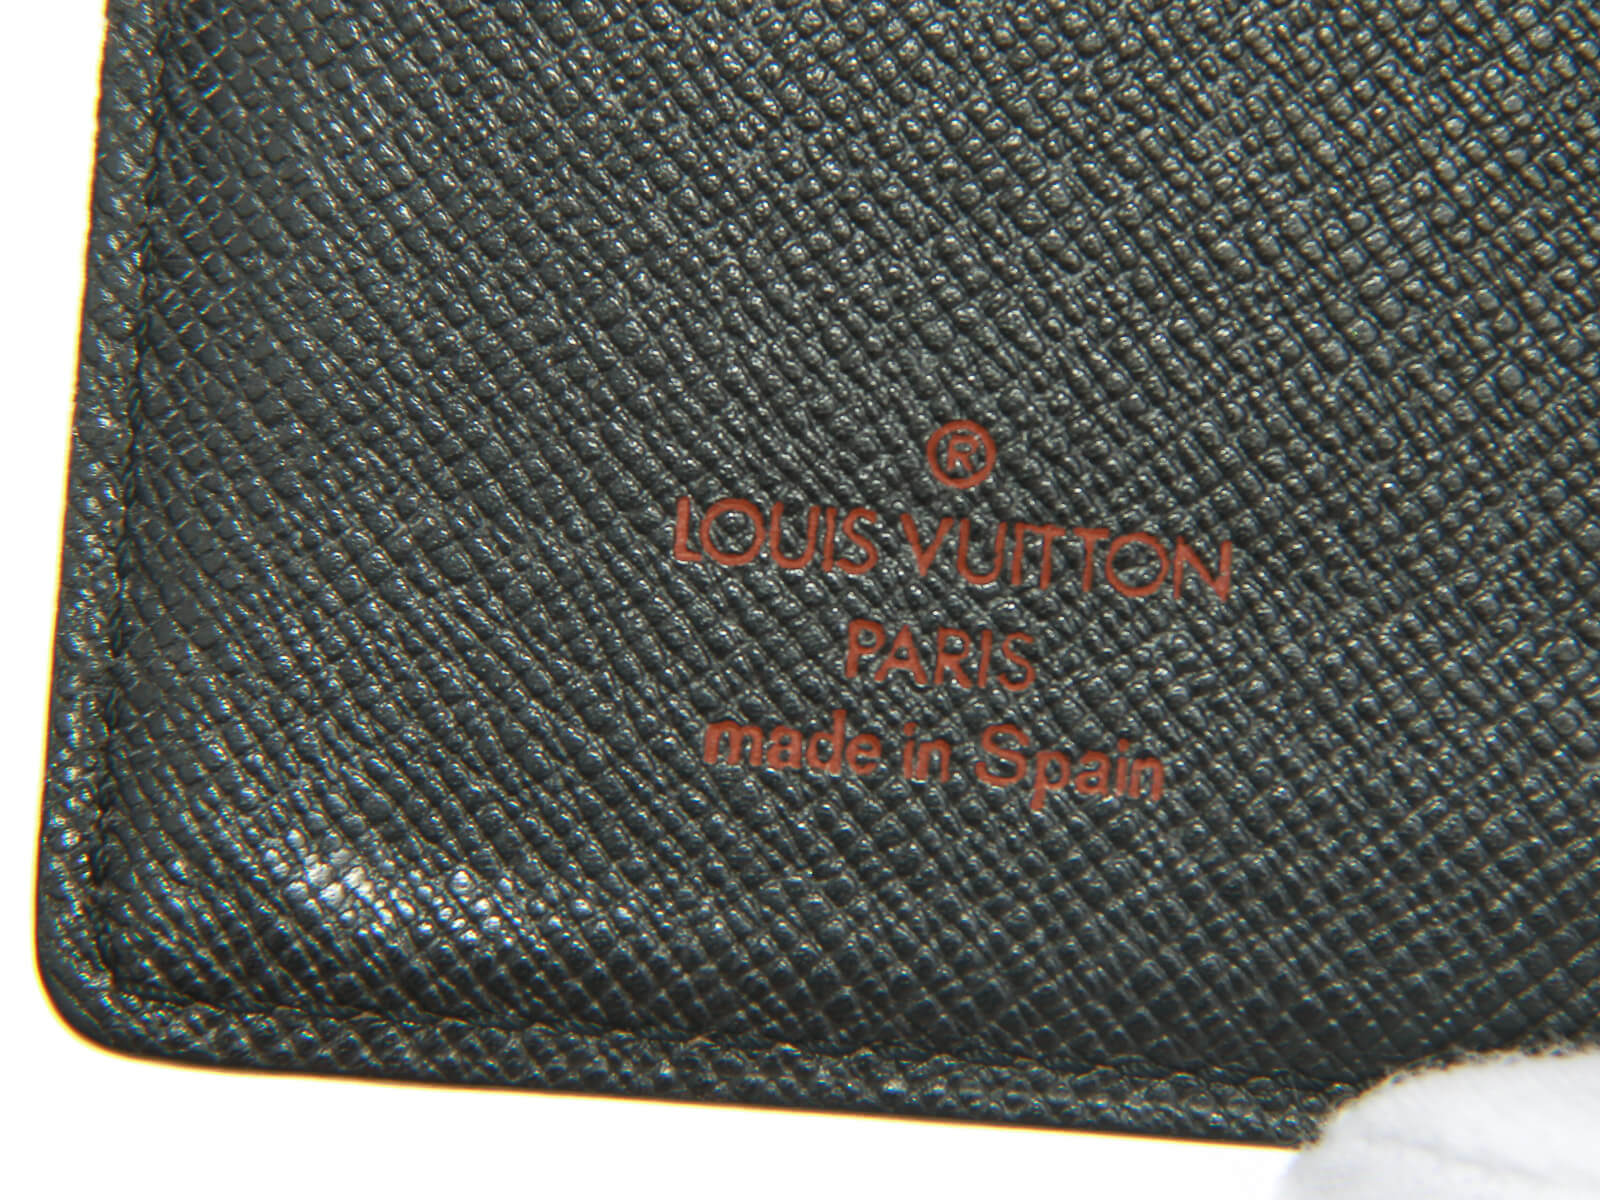 Louis Vuitton Epi Notebook Agenda Planner LV-1202P-0009 – MISLUX